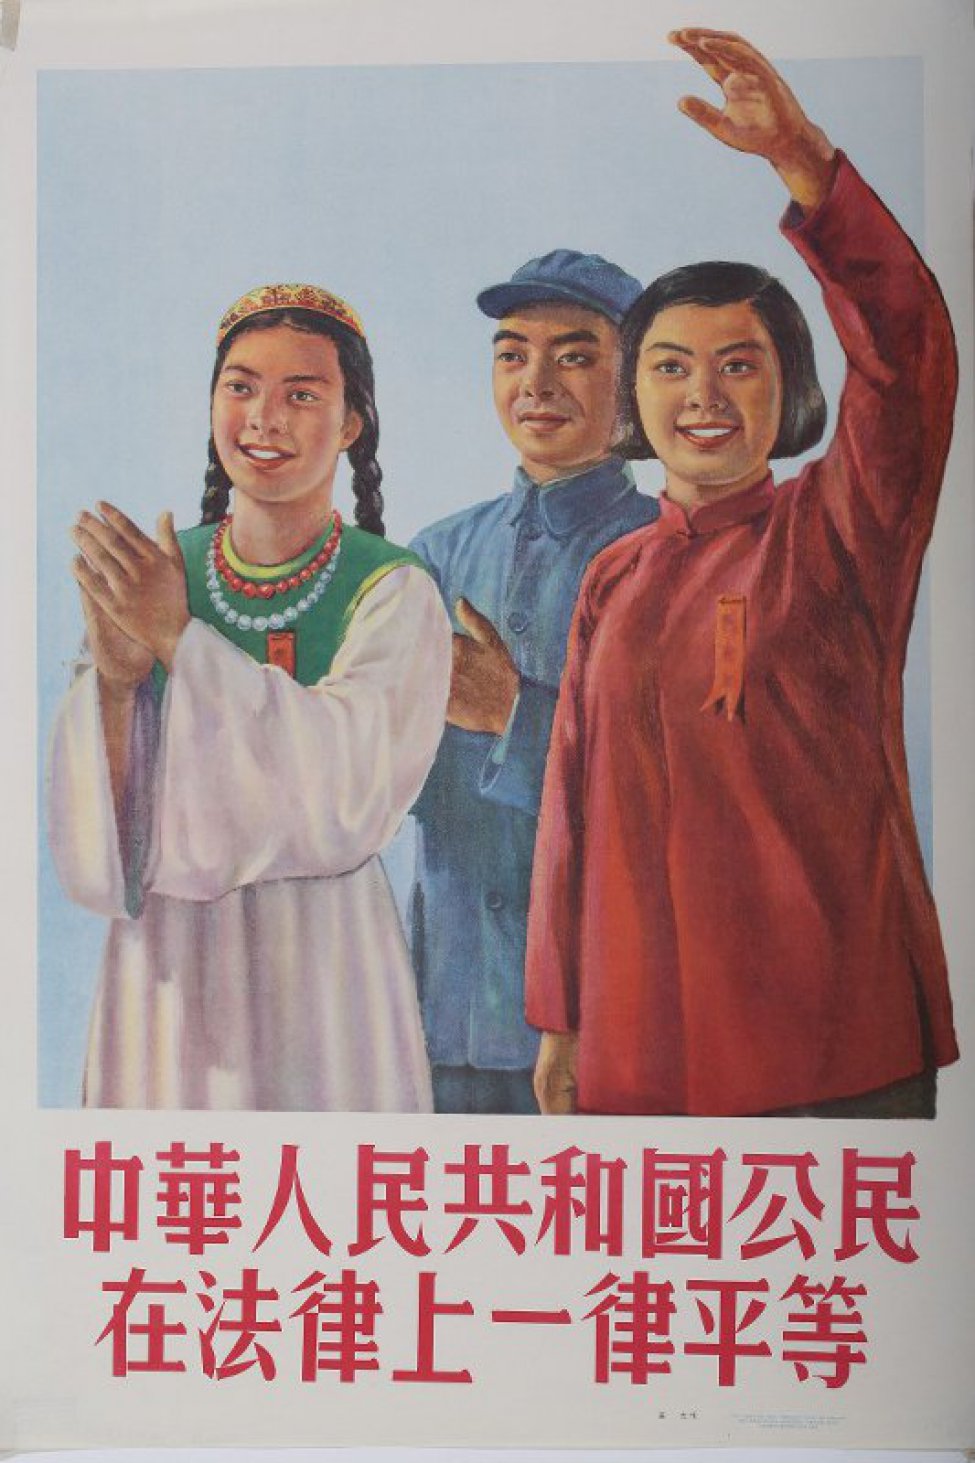 Изображены поколенно две девушки и юноша ( в центре). Девушка слева аплодирует, другая девушка, с коротко остриженными волосами, подняла вверх левую руку. Под изображением текст из шестнадцати иероглифов.